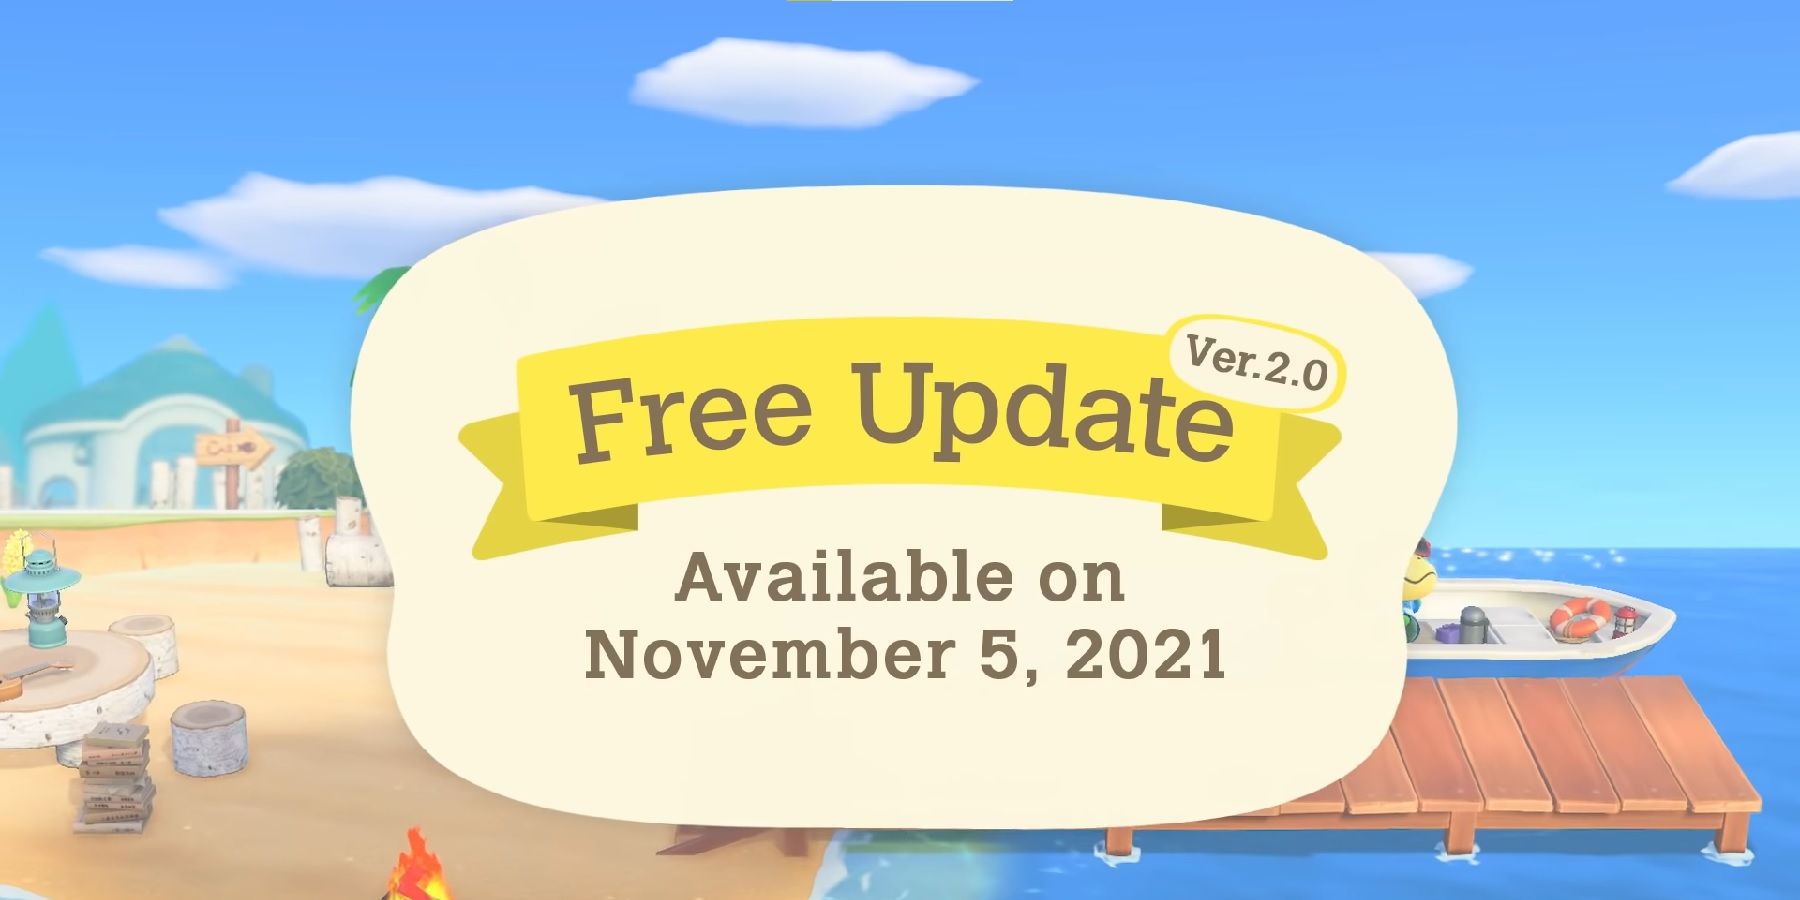 Version 2.0 Free update